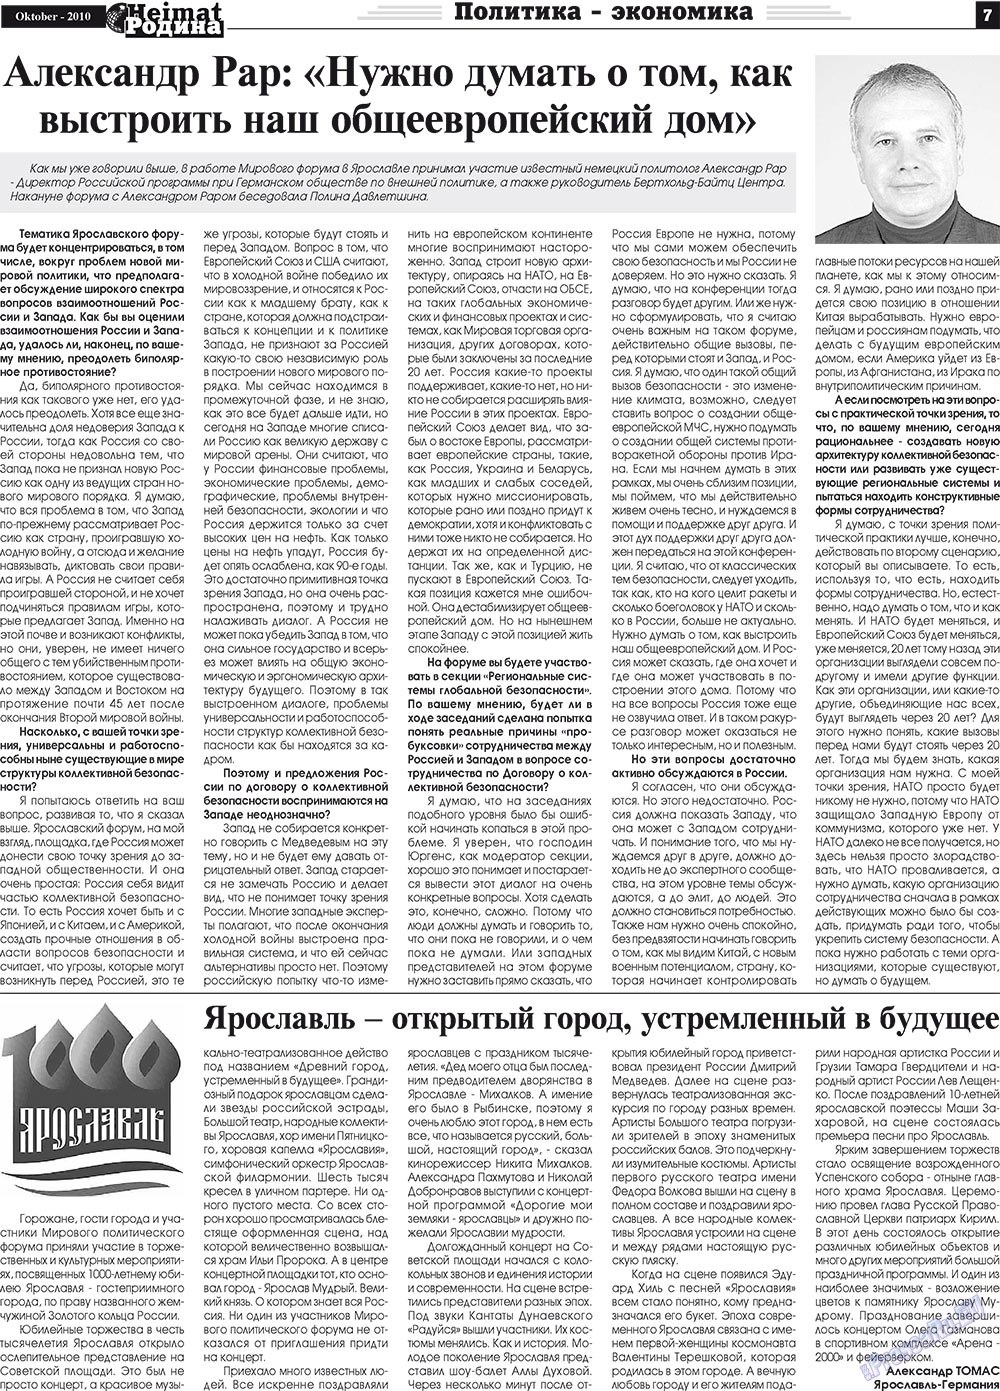 Heimat-Родина (газета). 2010 год, номер 10, стр. 7